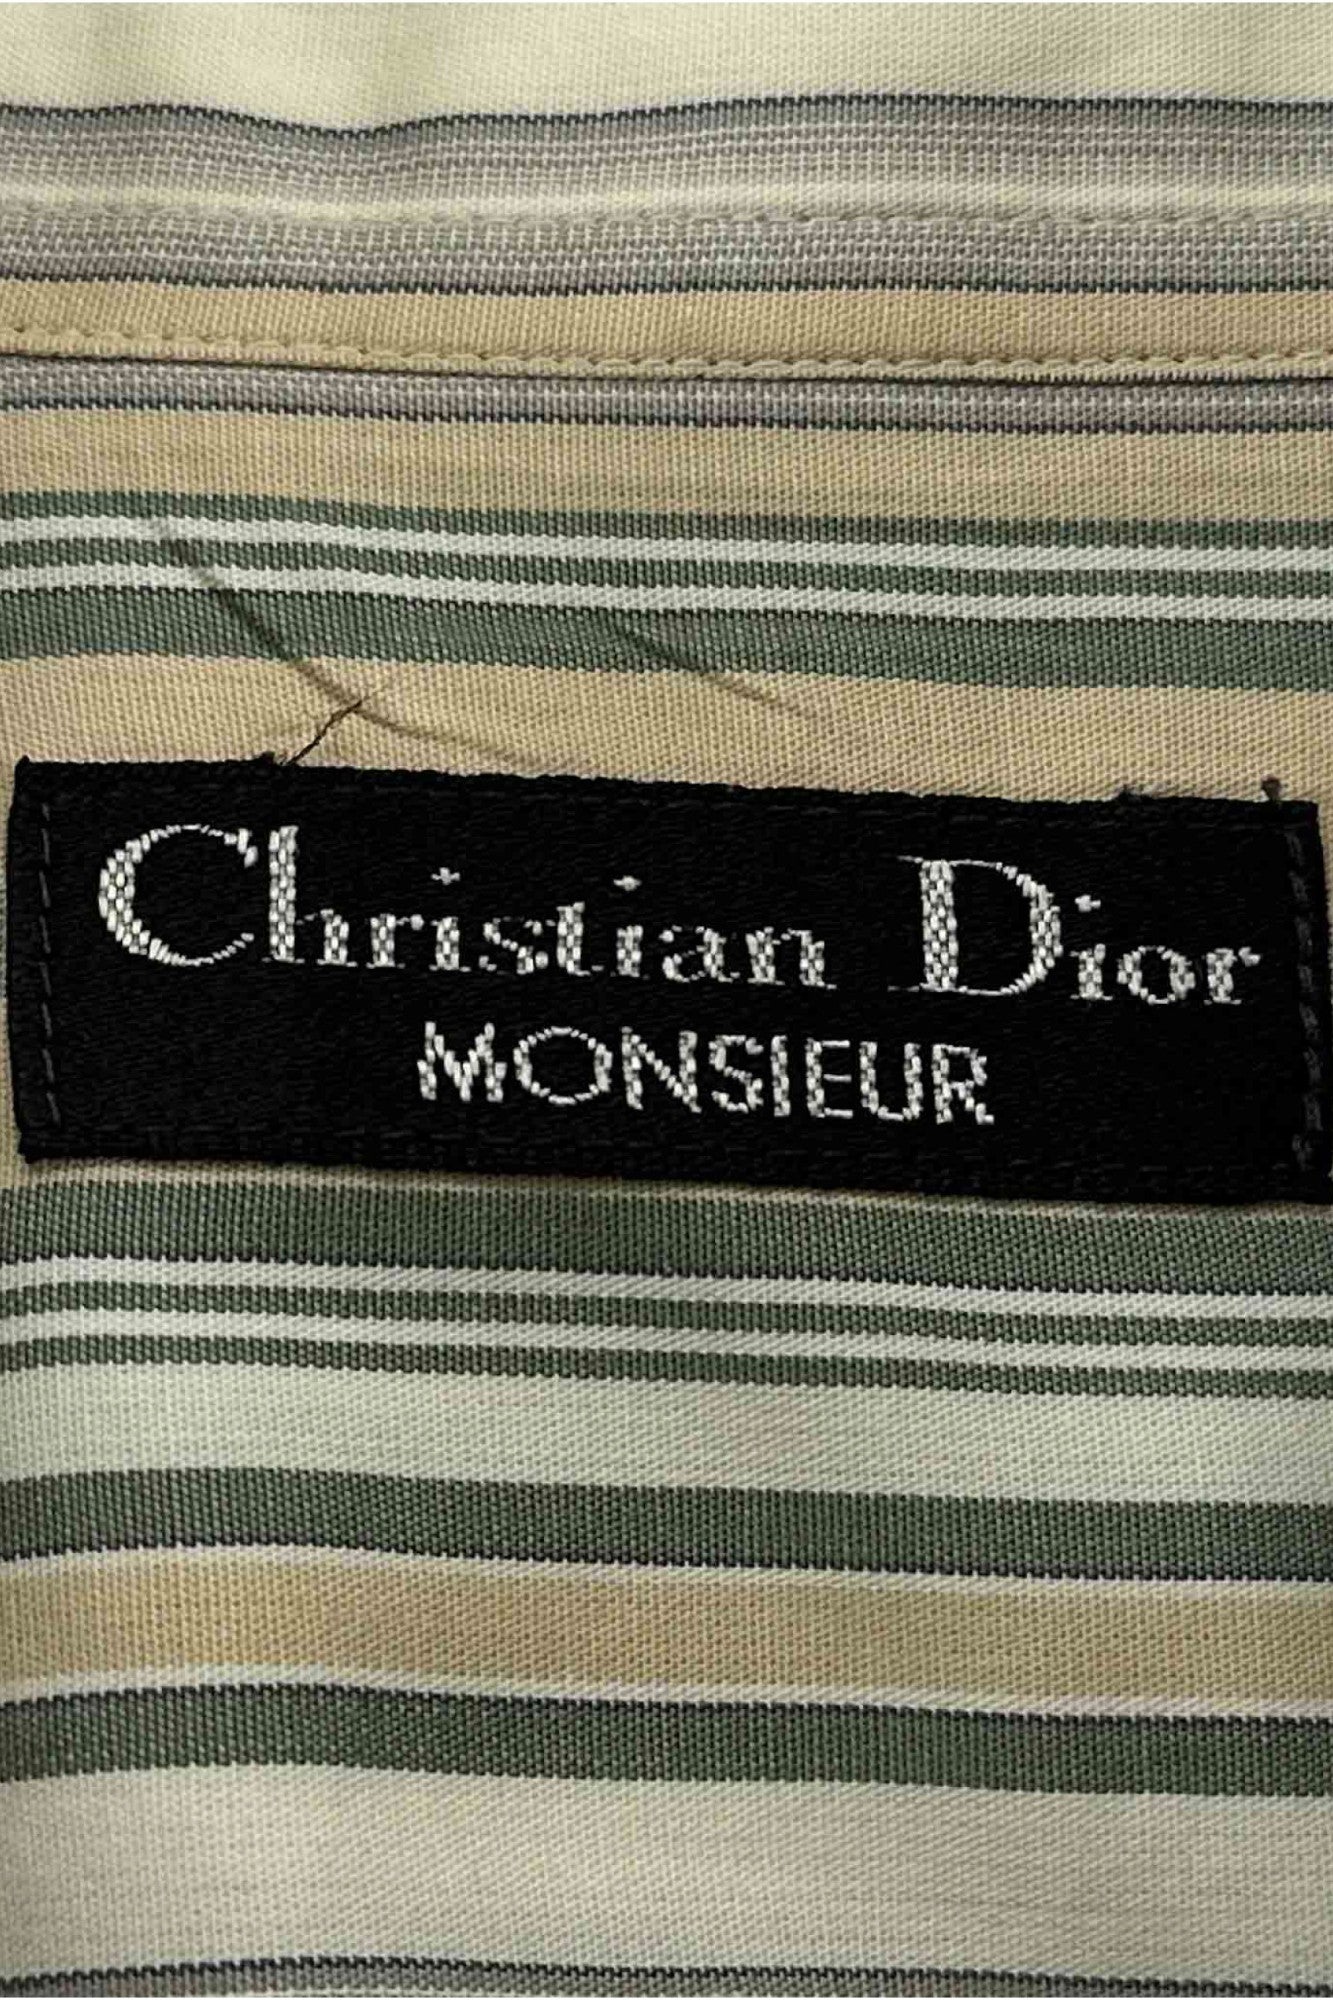 Christian Dior MONSIEUR striped shirt